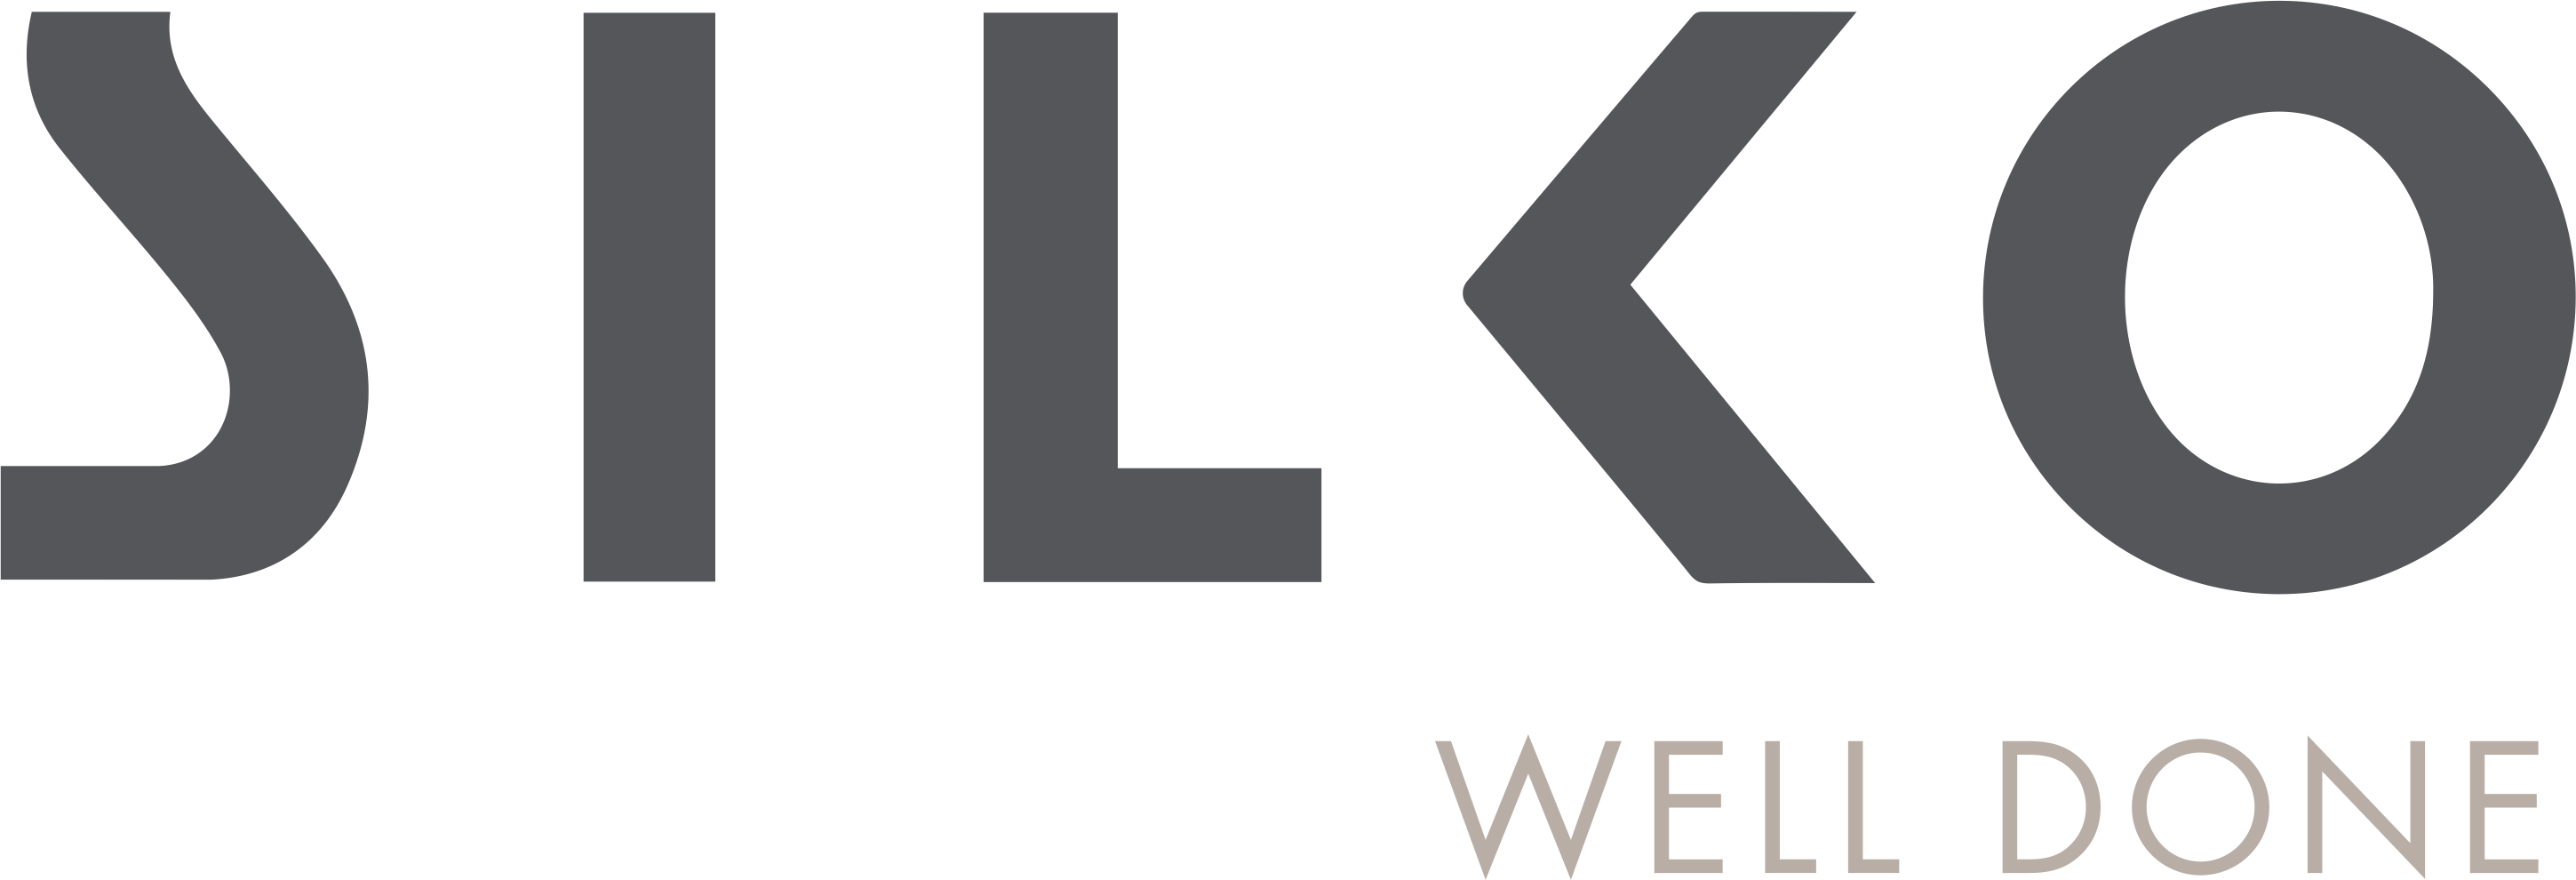 silko-logo-completo